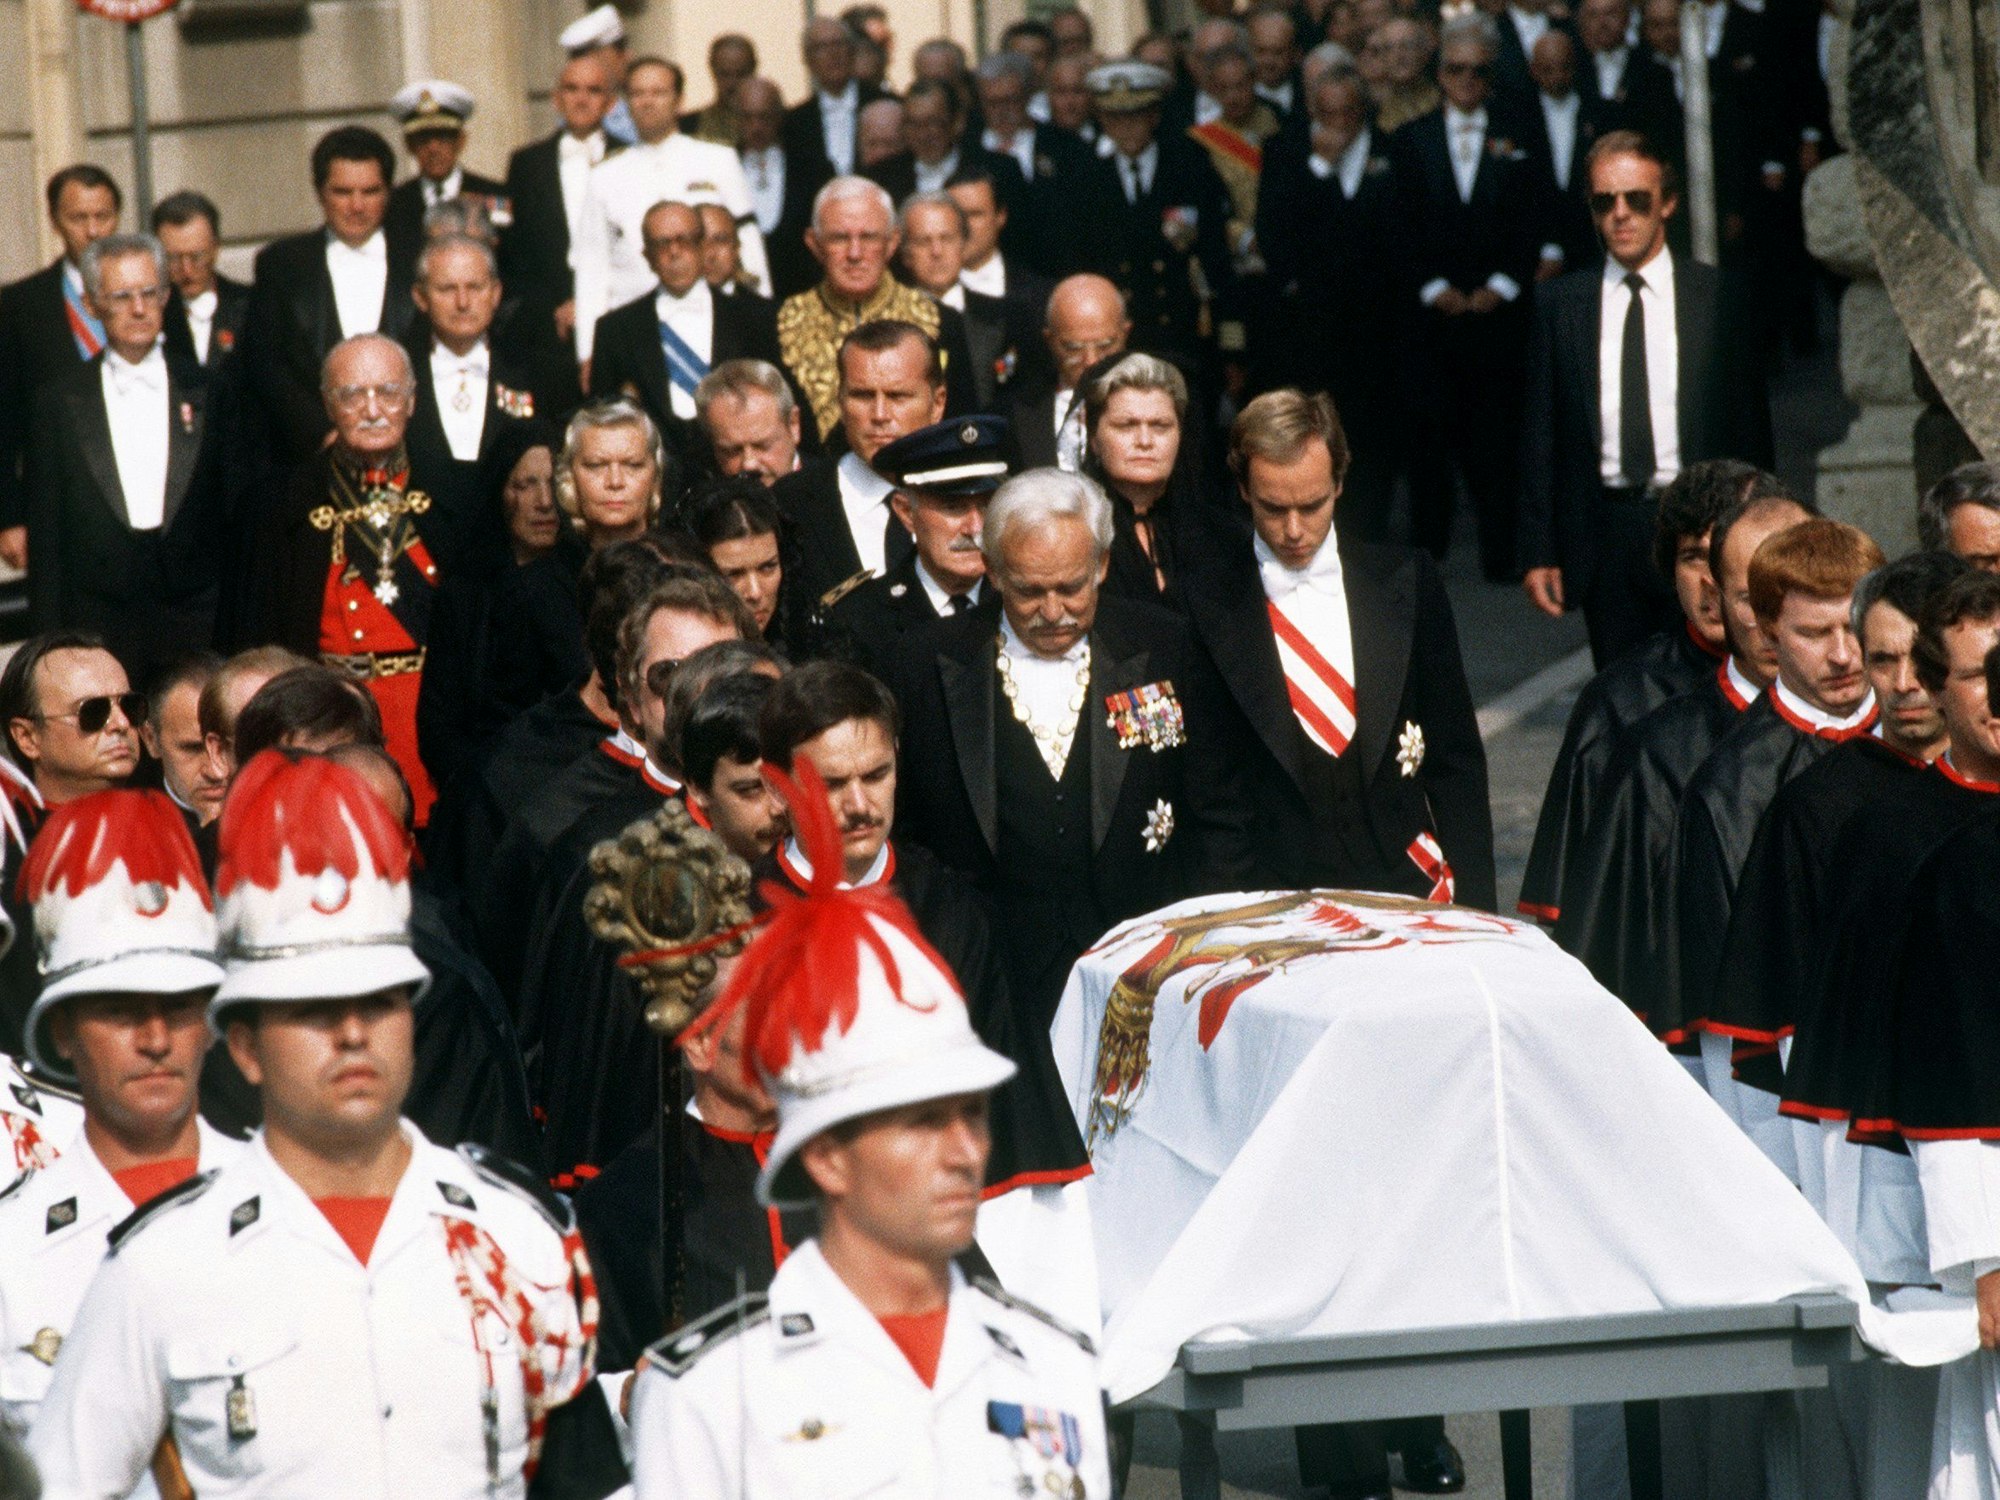 Fürst Rainier von Monaco und seine Kinder Prinzessin Caroline und Prinz Albert folgen dem Sarg der verstorbenen Fürstin Gracia Patricia, als der Trauerzug vom Schloss zur Kathedrale von Monaco zieht.